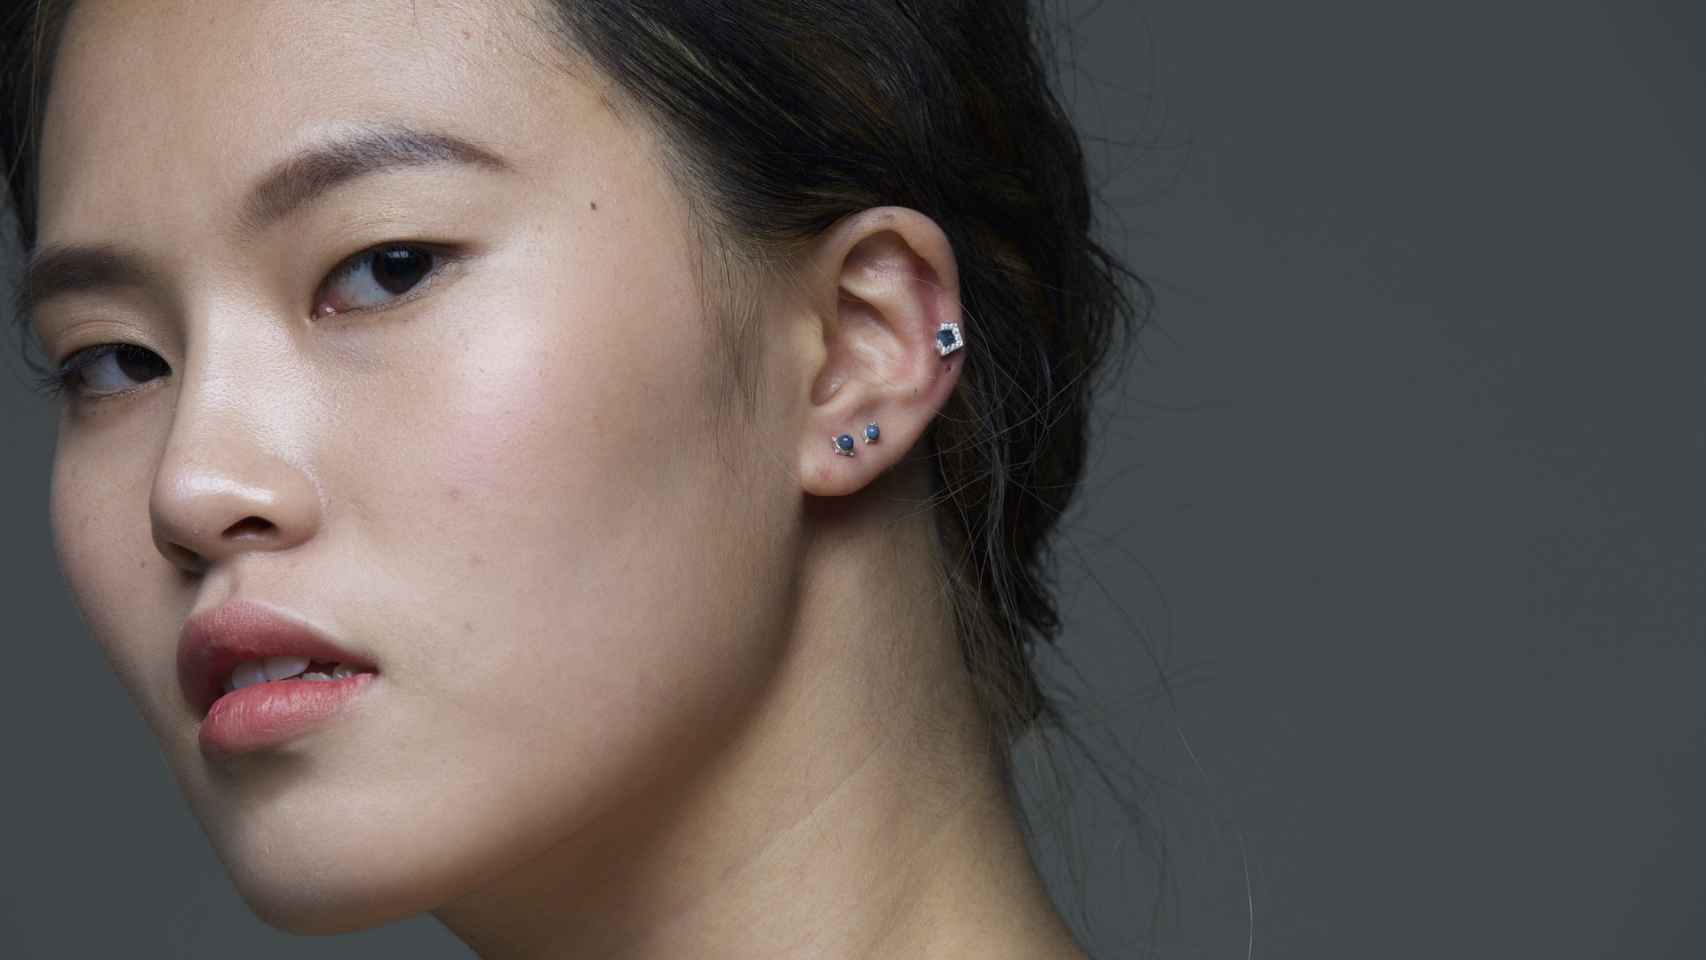 Cómo curar un piercing en la oreja y evitar problemas